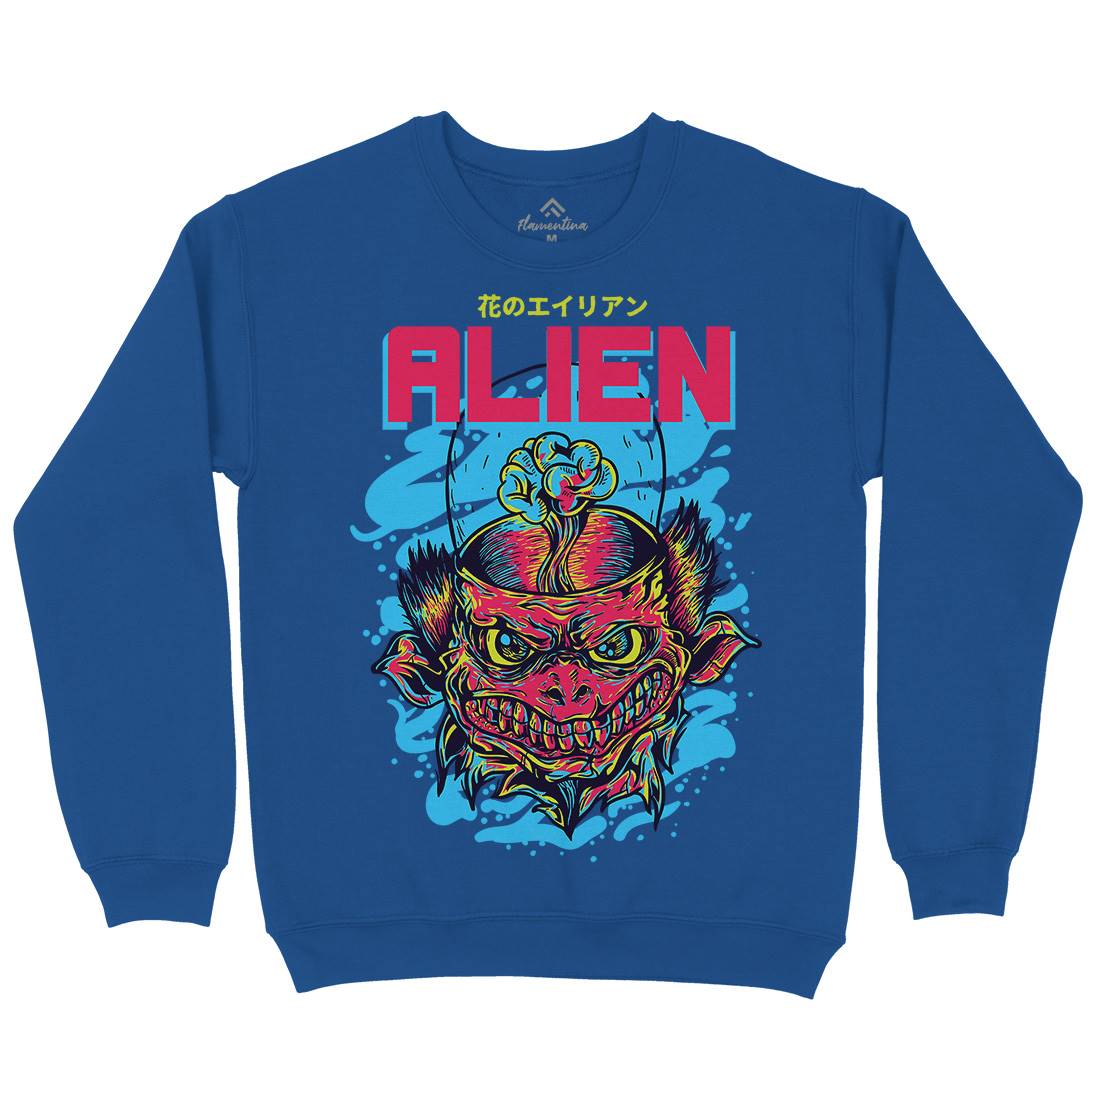 Alien Invaders Kids Crew Neck Sweatshirt Space D702